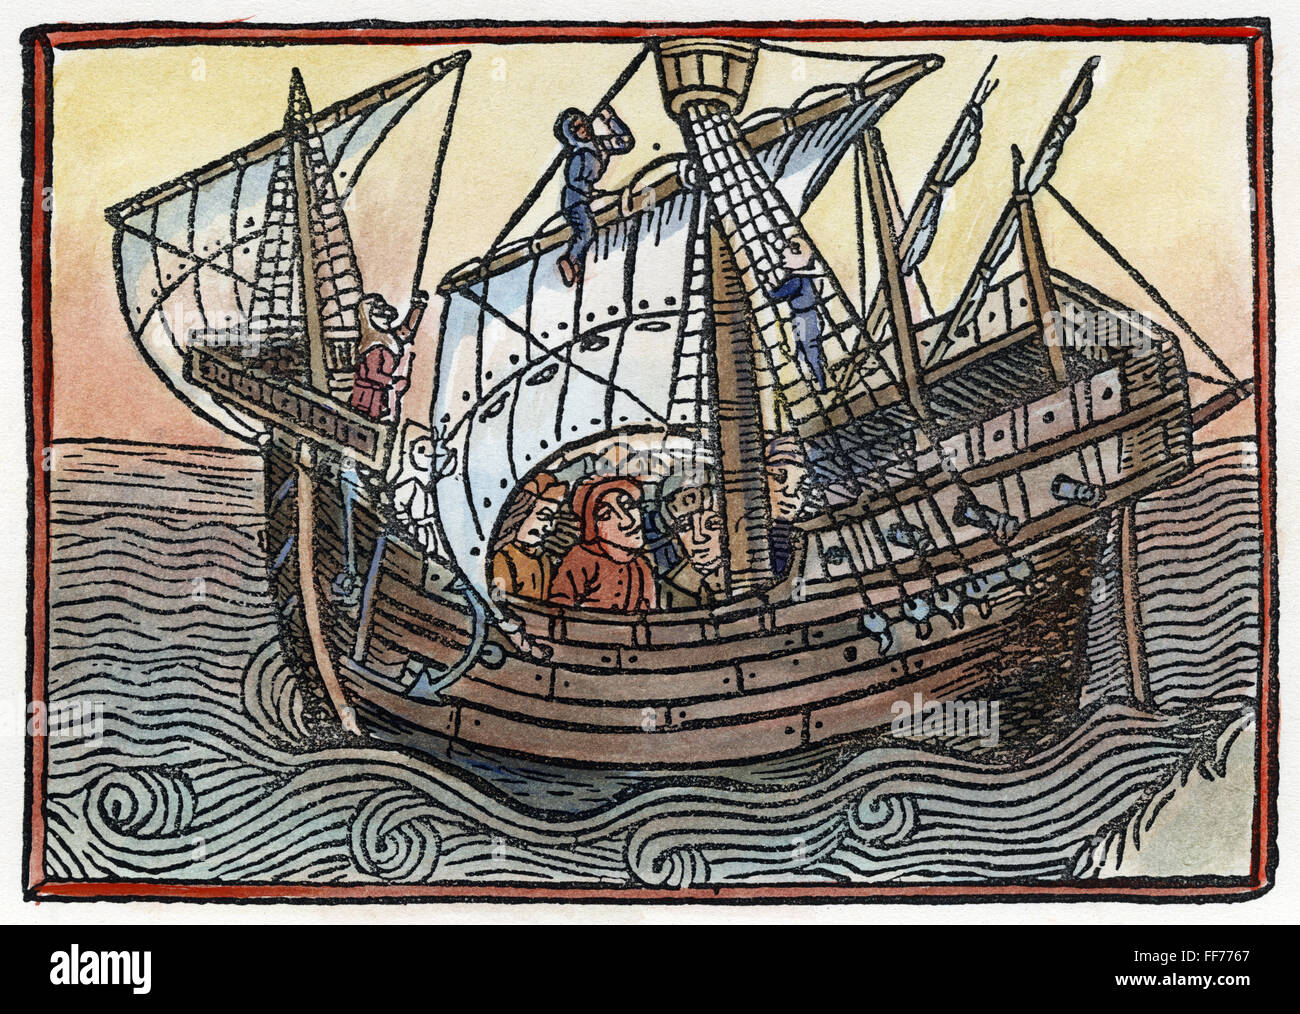 SPANISCHES SCHIFF, 1496. NUM typische Ende des 15. Jahrhunderts spanisches Schiff. Holzschnitt aus "Estoriador tun Emperador Vespesiano", 1496. Stockfoto